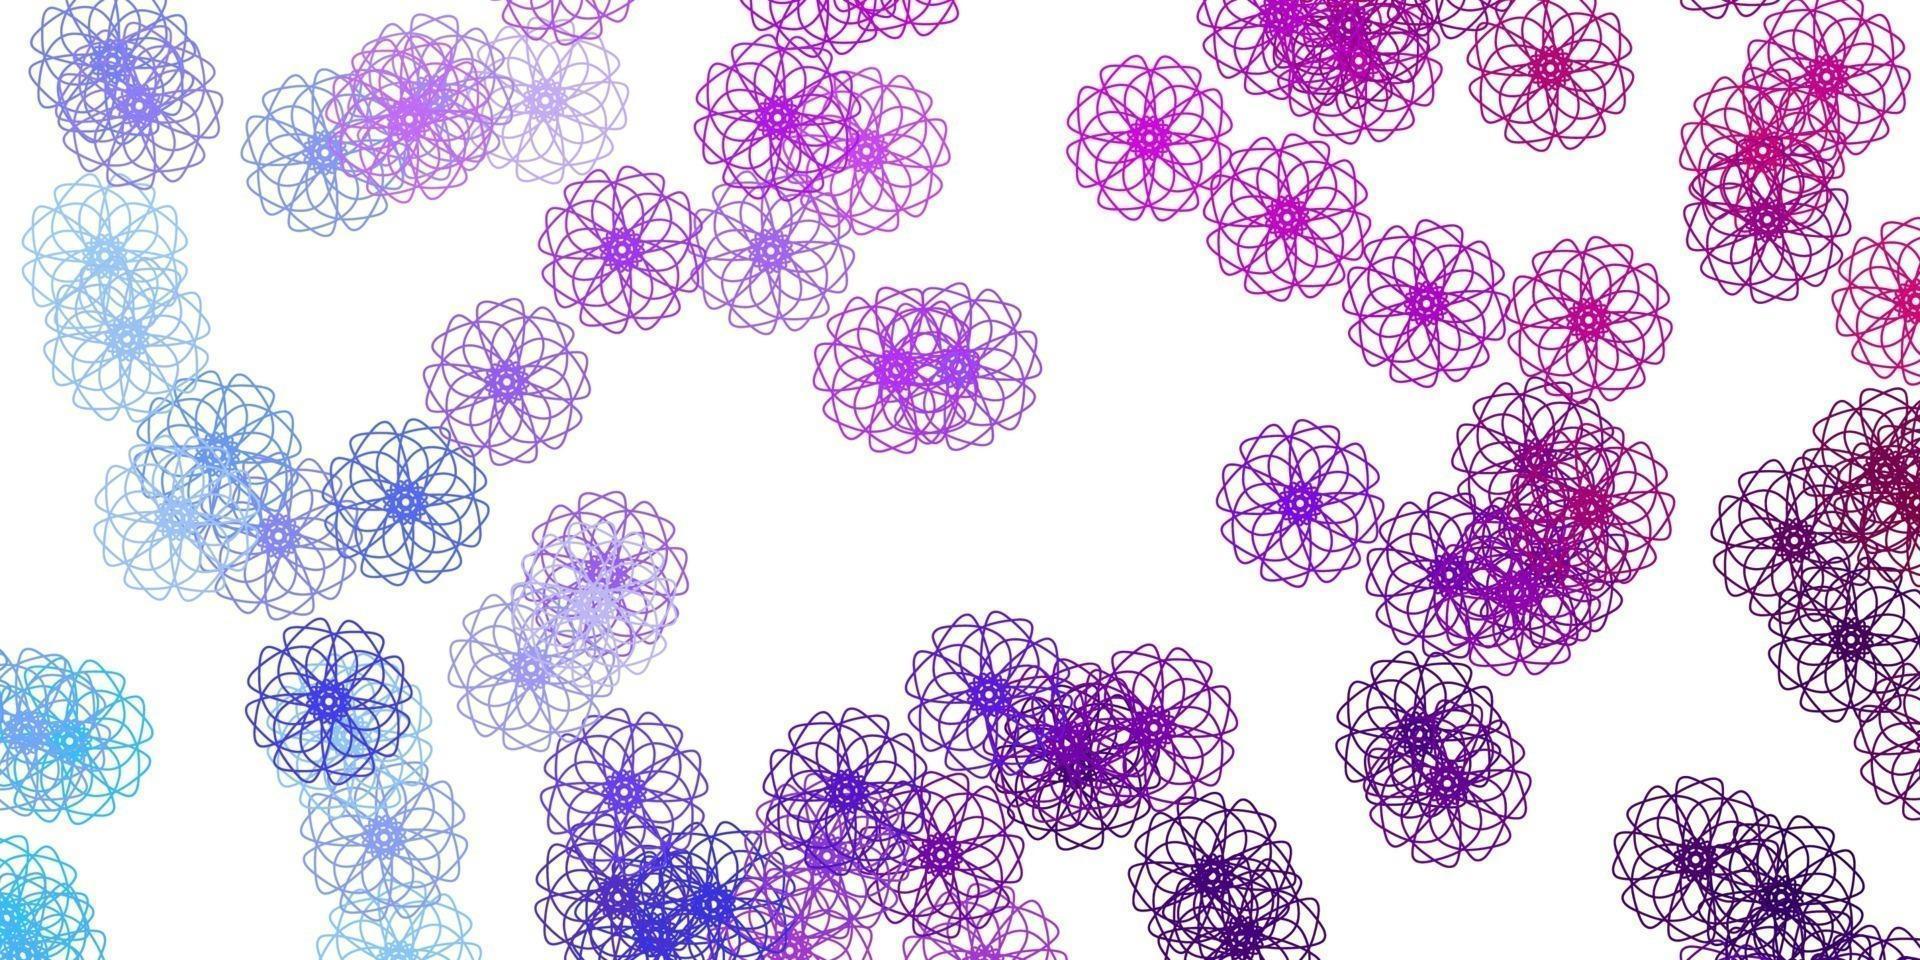 textura de doodle de vector azul claro, rojo con flores.